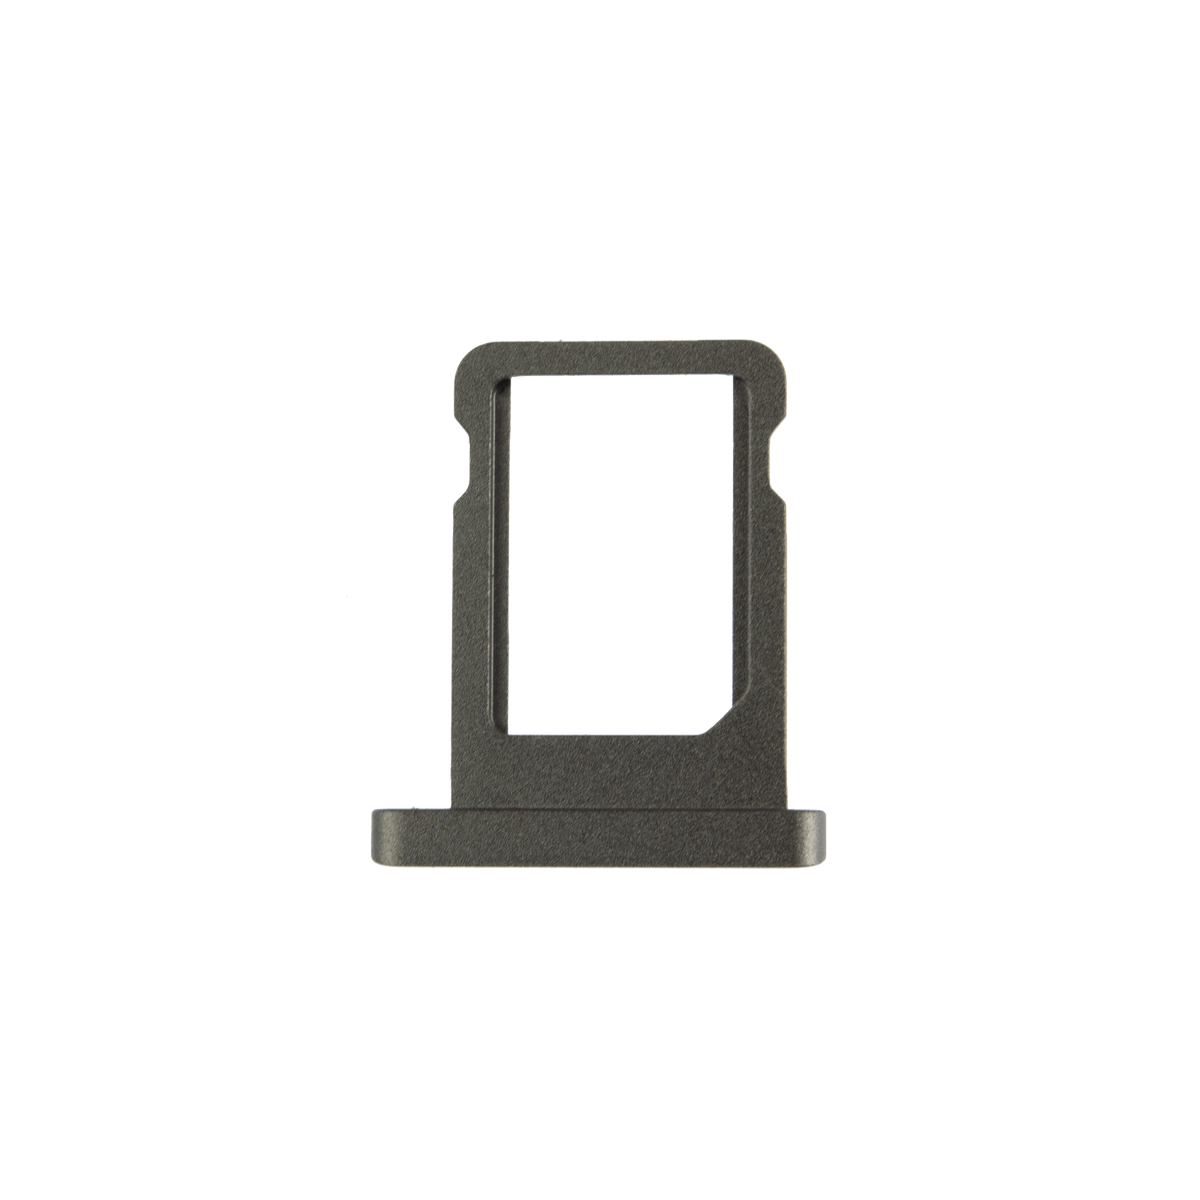 iPad Mini 4 SIM Card Tray Replacement